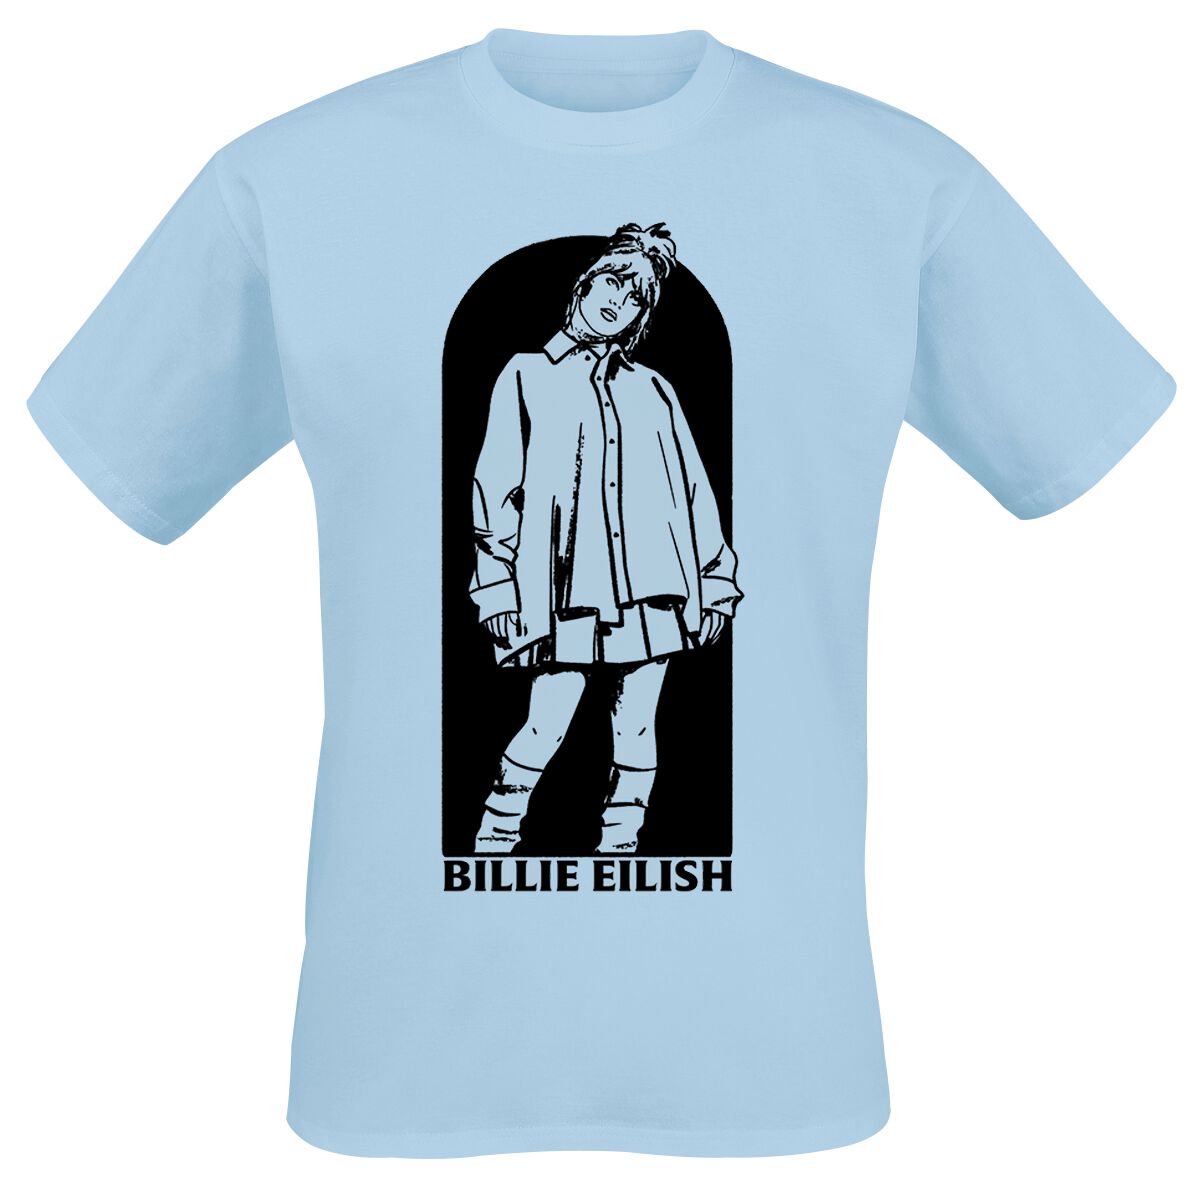 Billie Eilish T-Shirt - Doorway - S bis XL - für Männer - Größe S - hellblau  - Lizenziertes Merchandise!